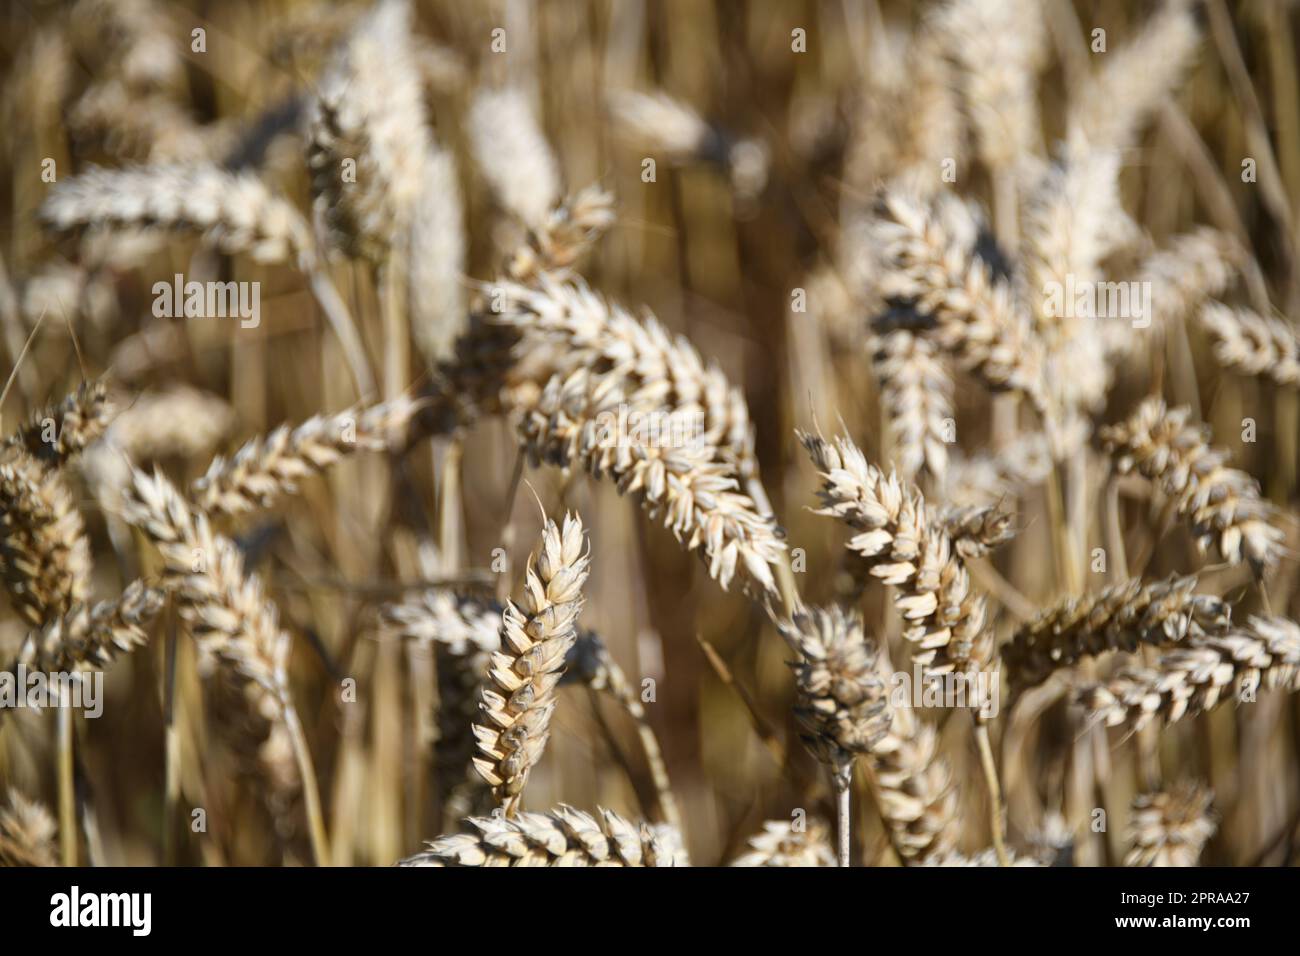 Nahaufnahme eines Weizenohrs. Weizengetreide tragen wesentlich zur Ernährung der Weltbevölkerung bei. Weizen ist ein Grundnahrungsmittel. Die größten Anbaugebiete befinden sich in der Ukraine und in europa. Stockfoto